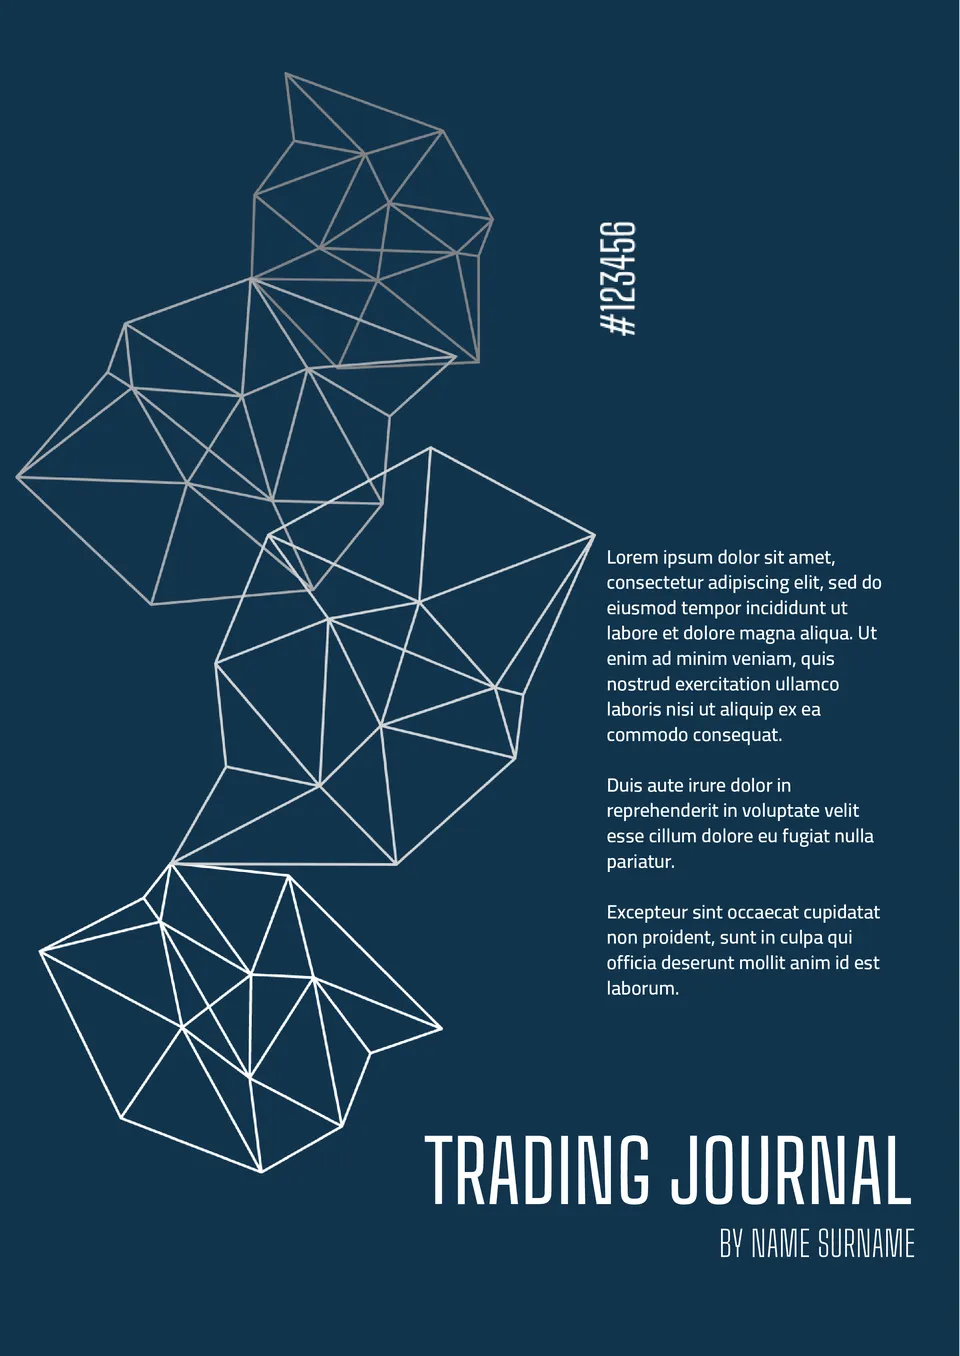 Trading journal